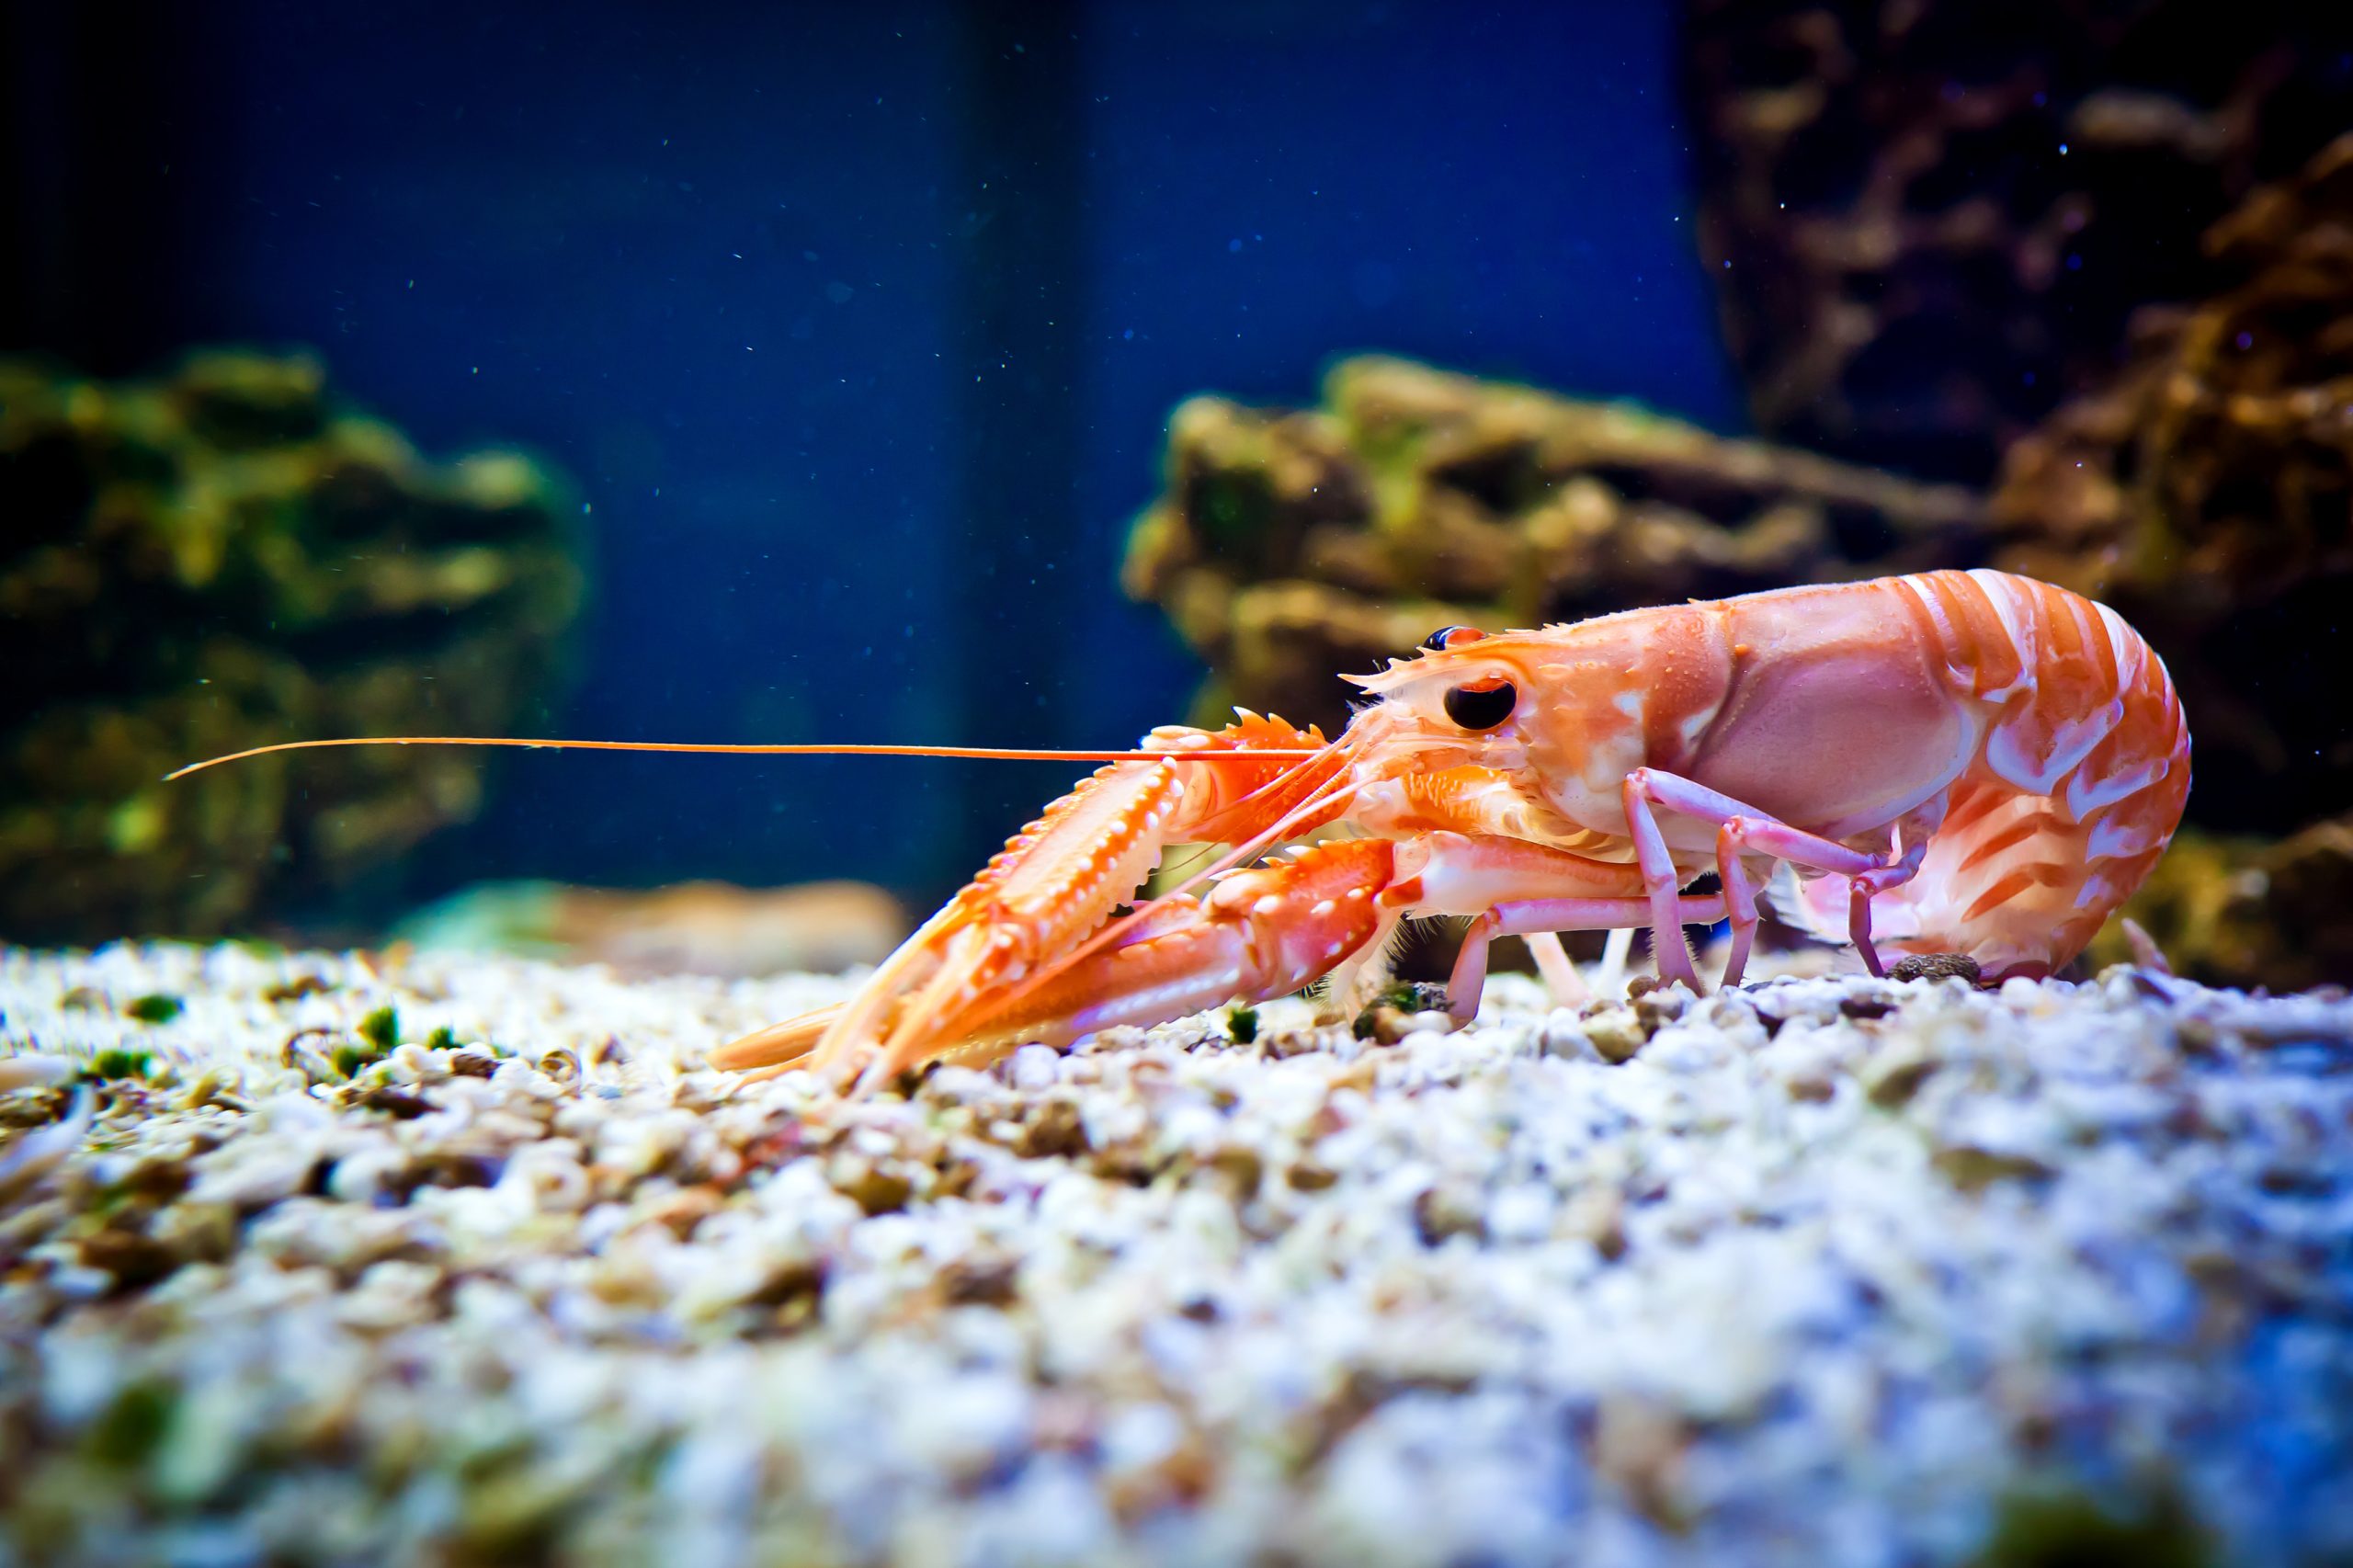 Adisseo: Colesterol FG 91% para mejorar la nutrición del camarón y el cangrejo